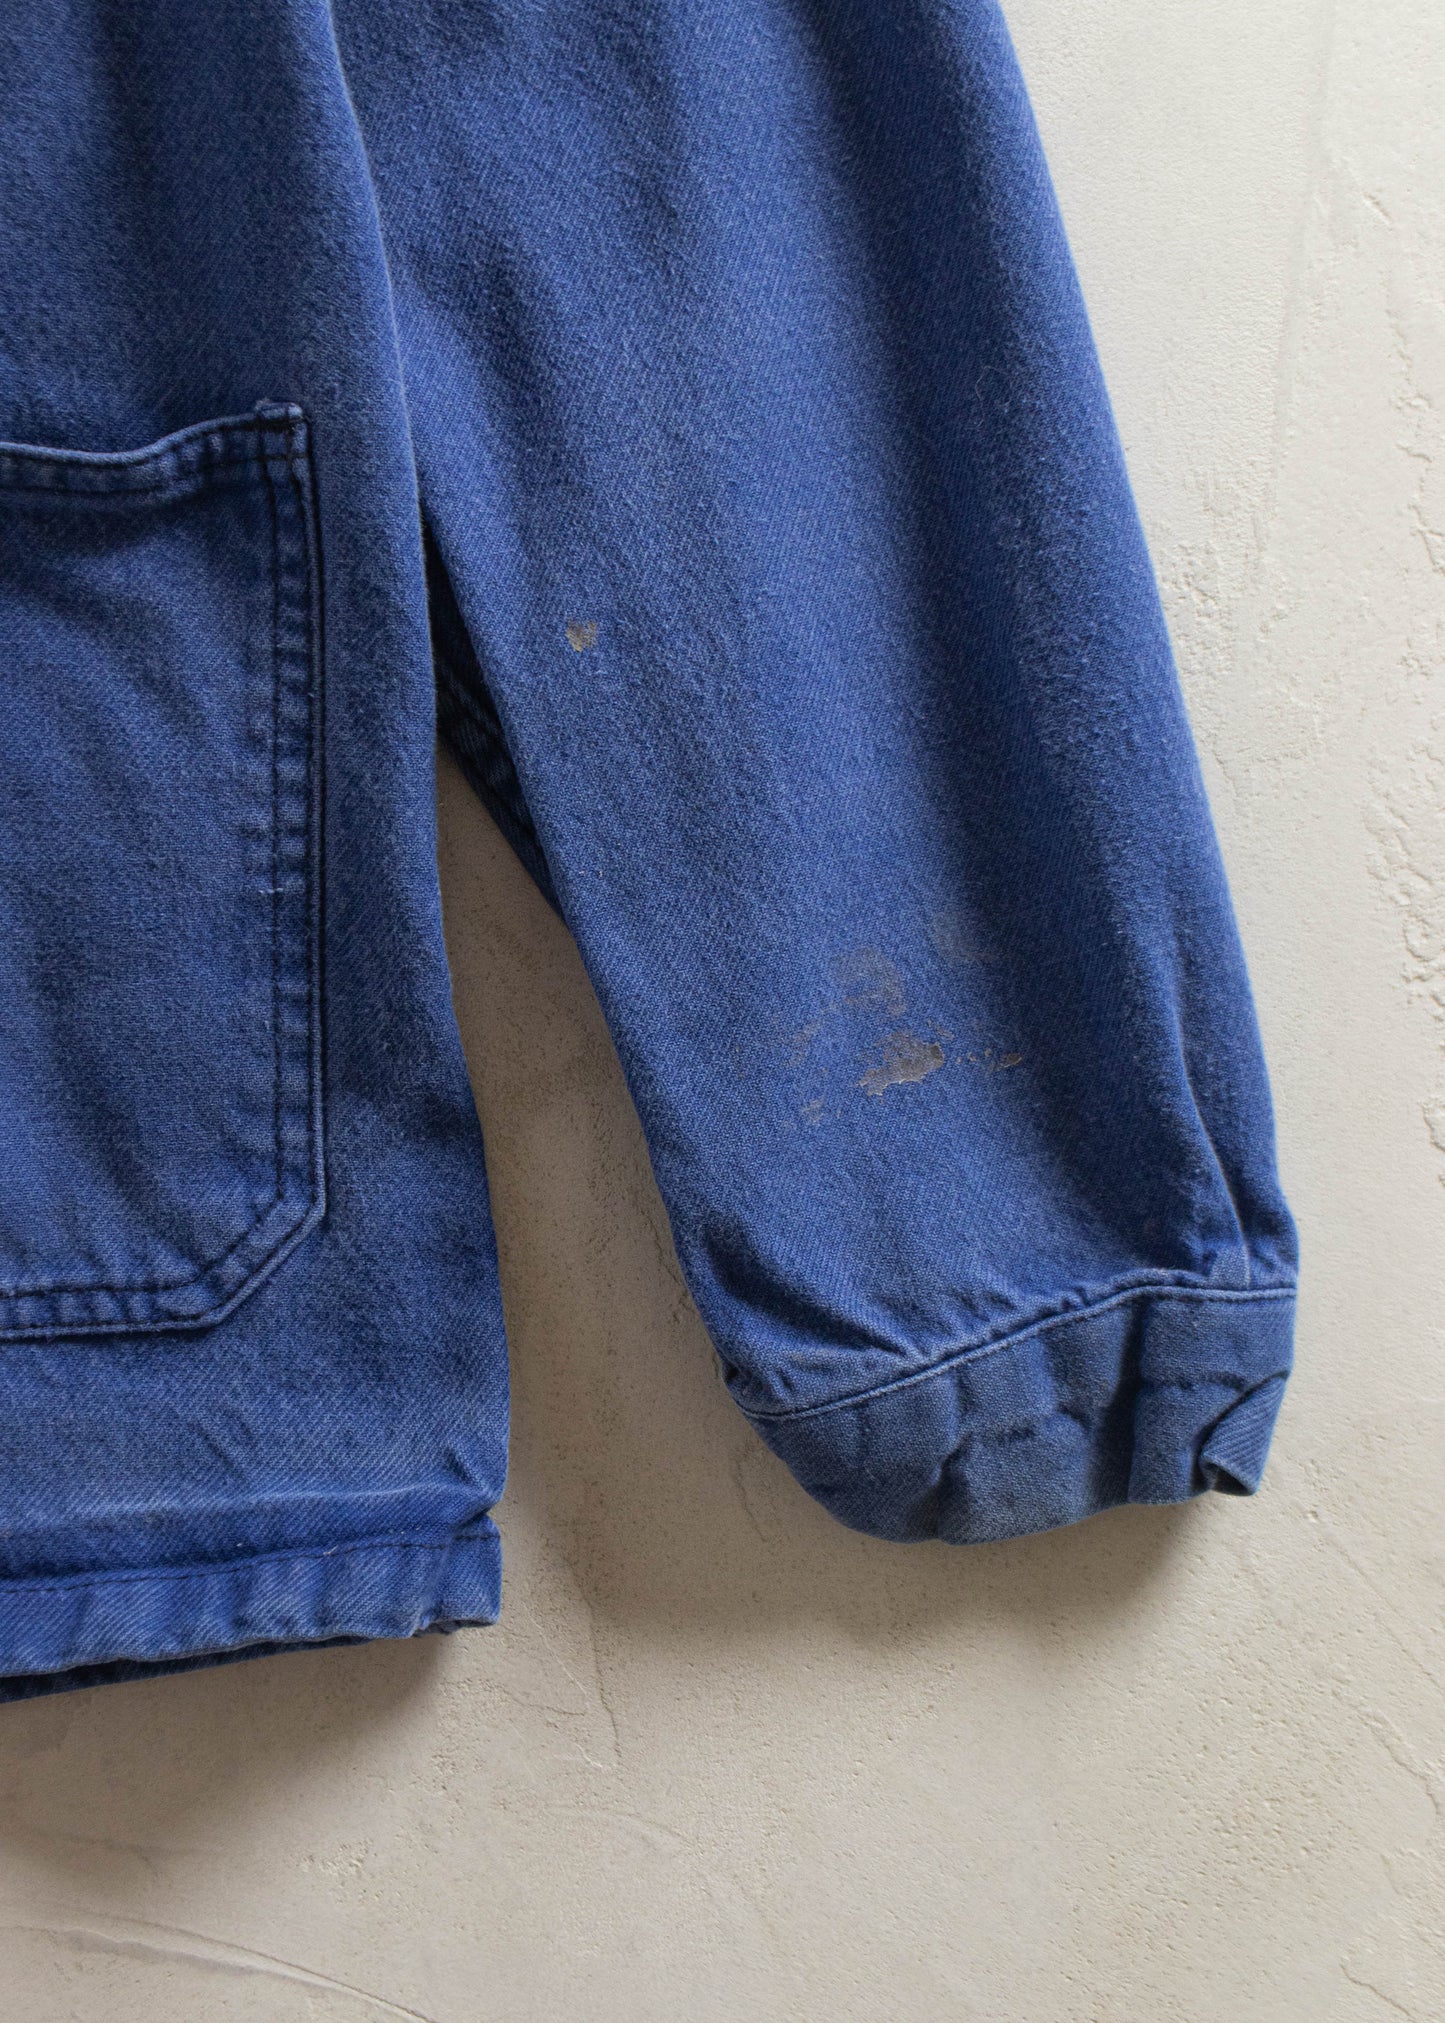 Vintage 1980s Bleu de Travail Workwear Chore Jacket Size S/M